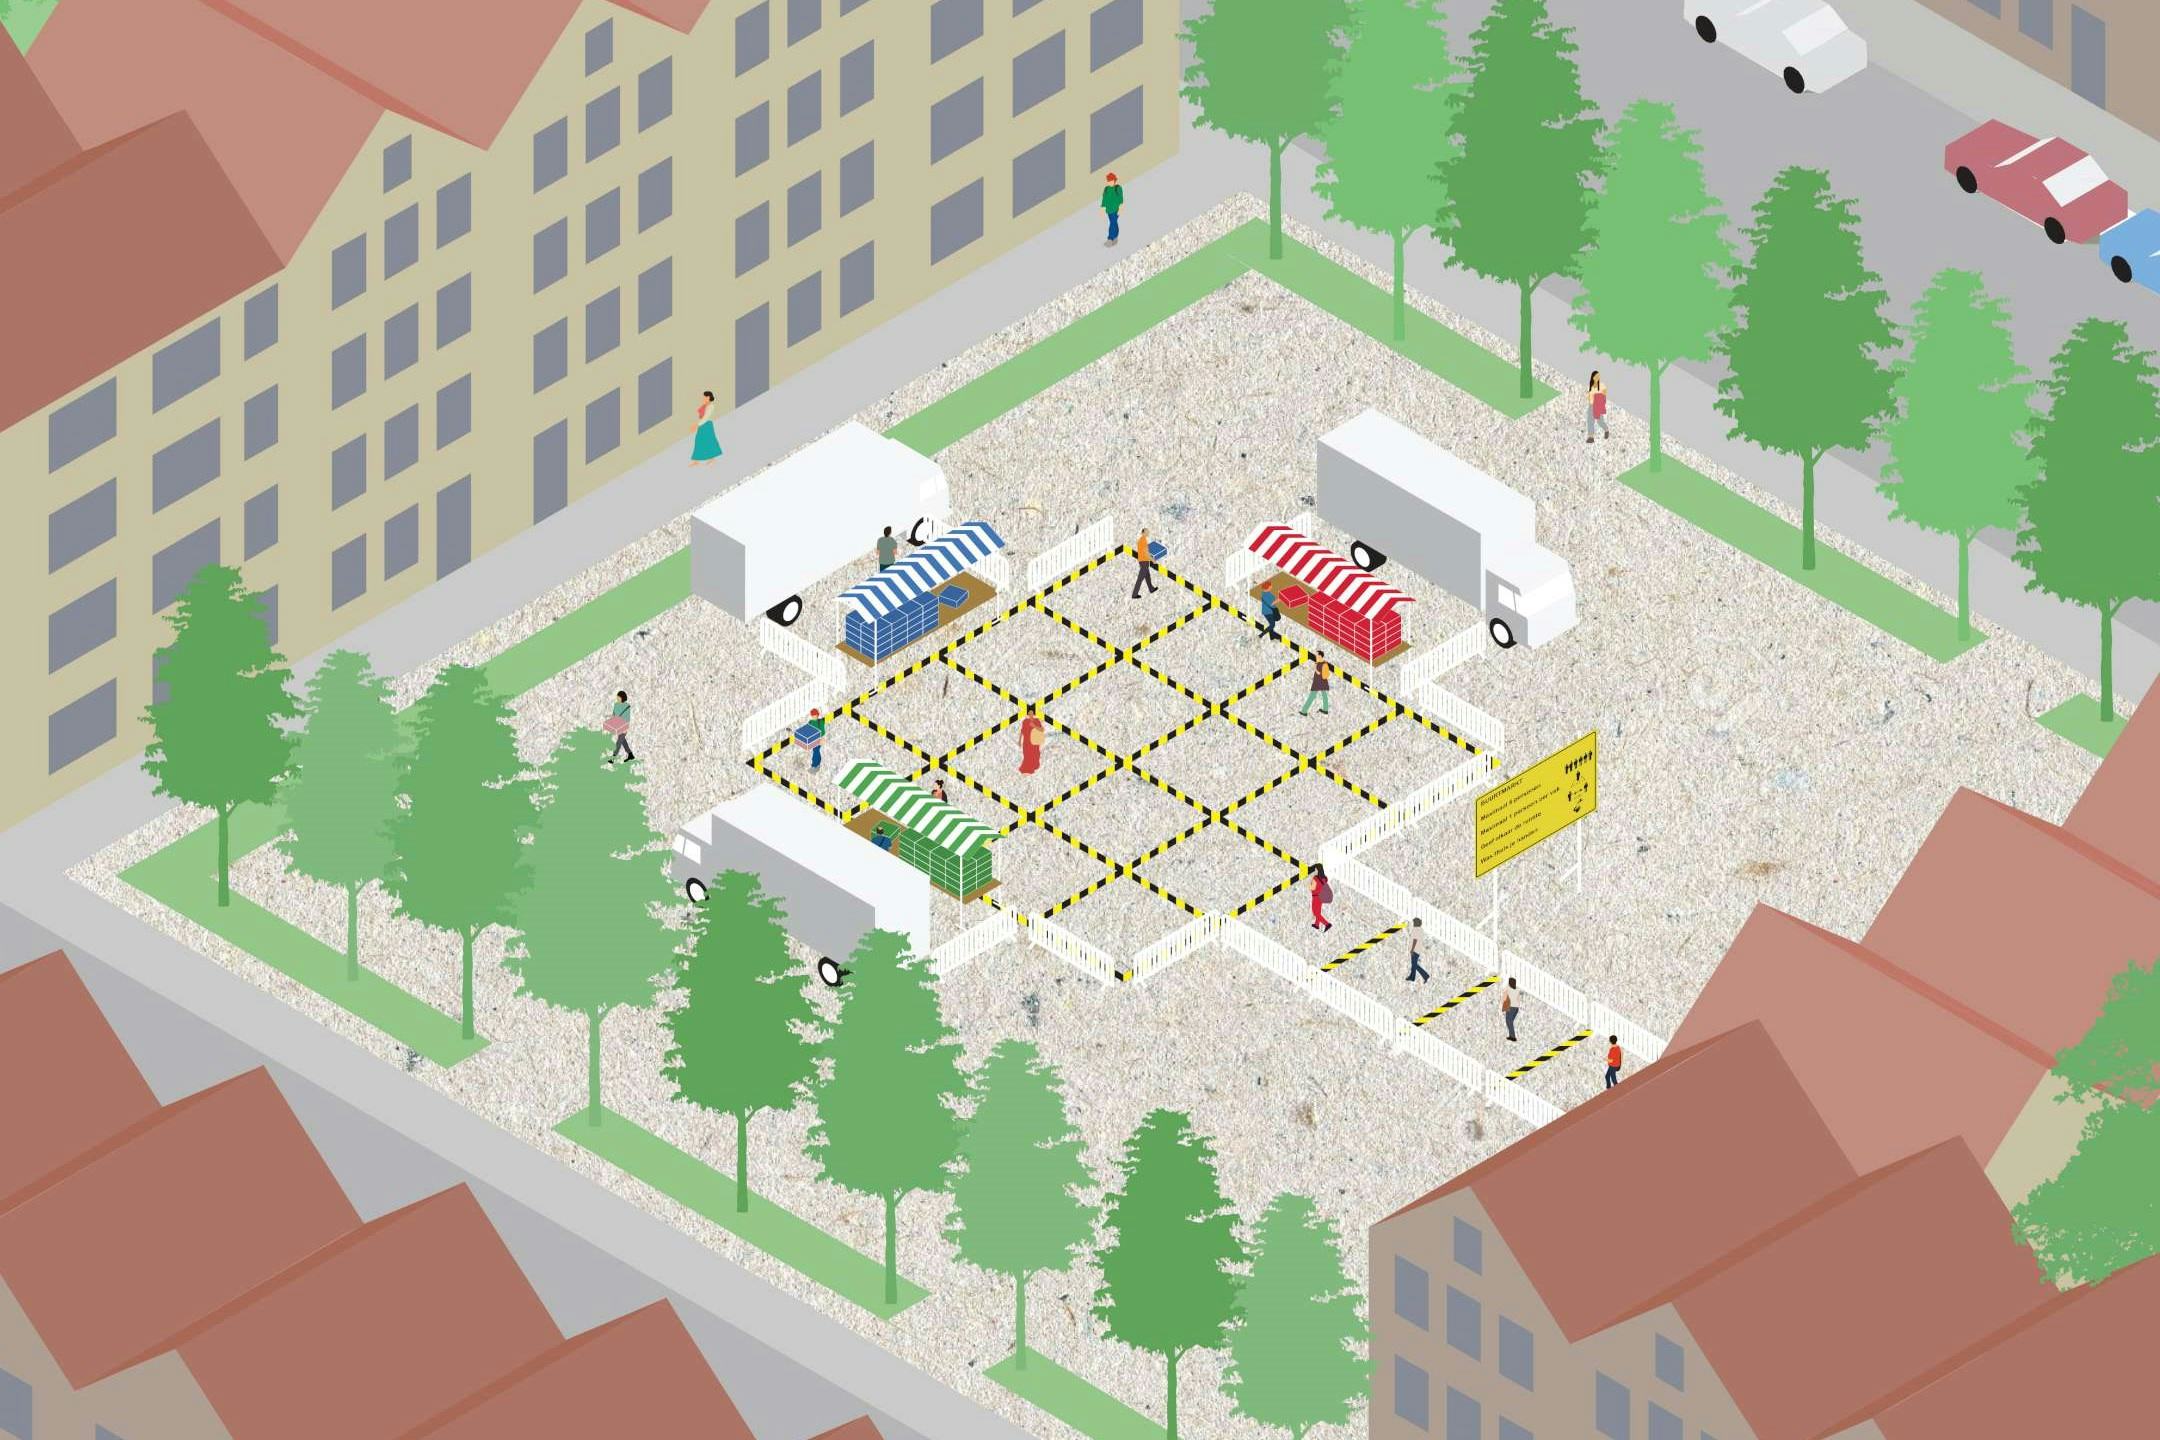 Shift architecture urbanism ontwerpt lokale micromarkt voor coronacrisis